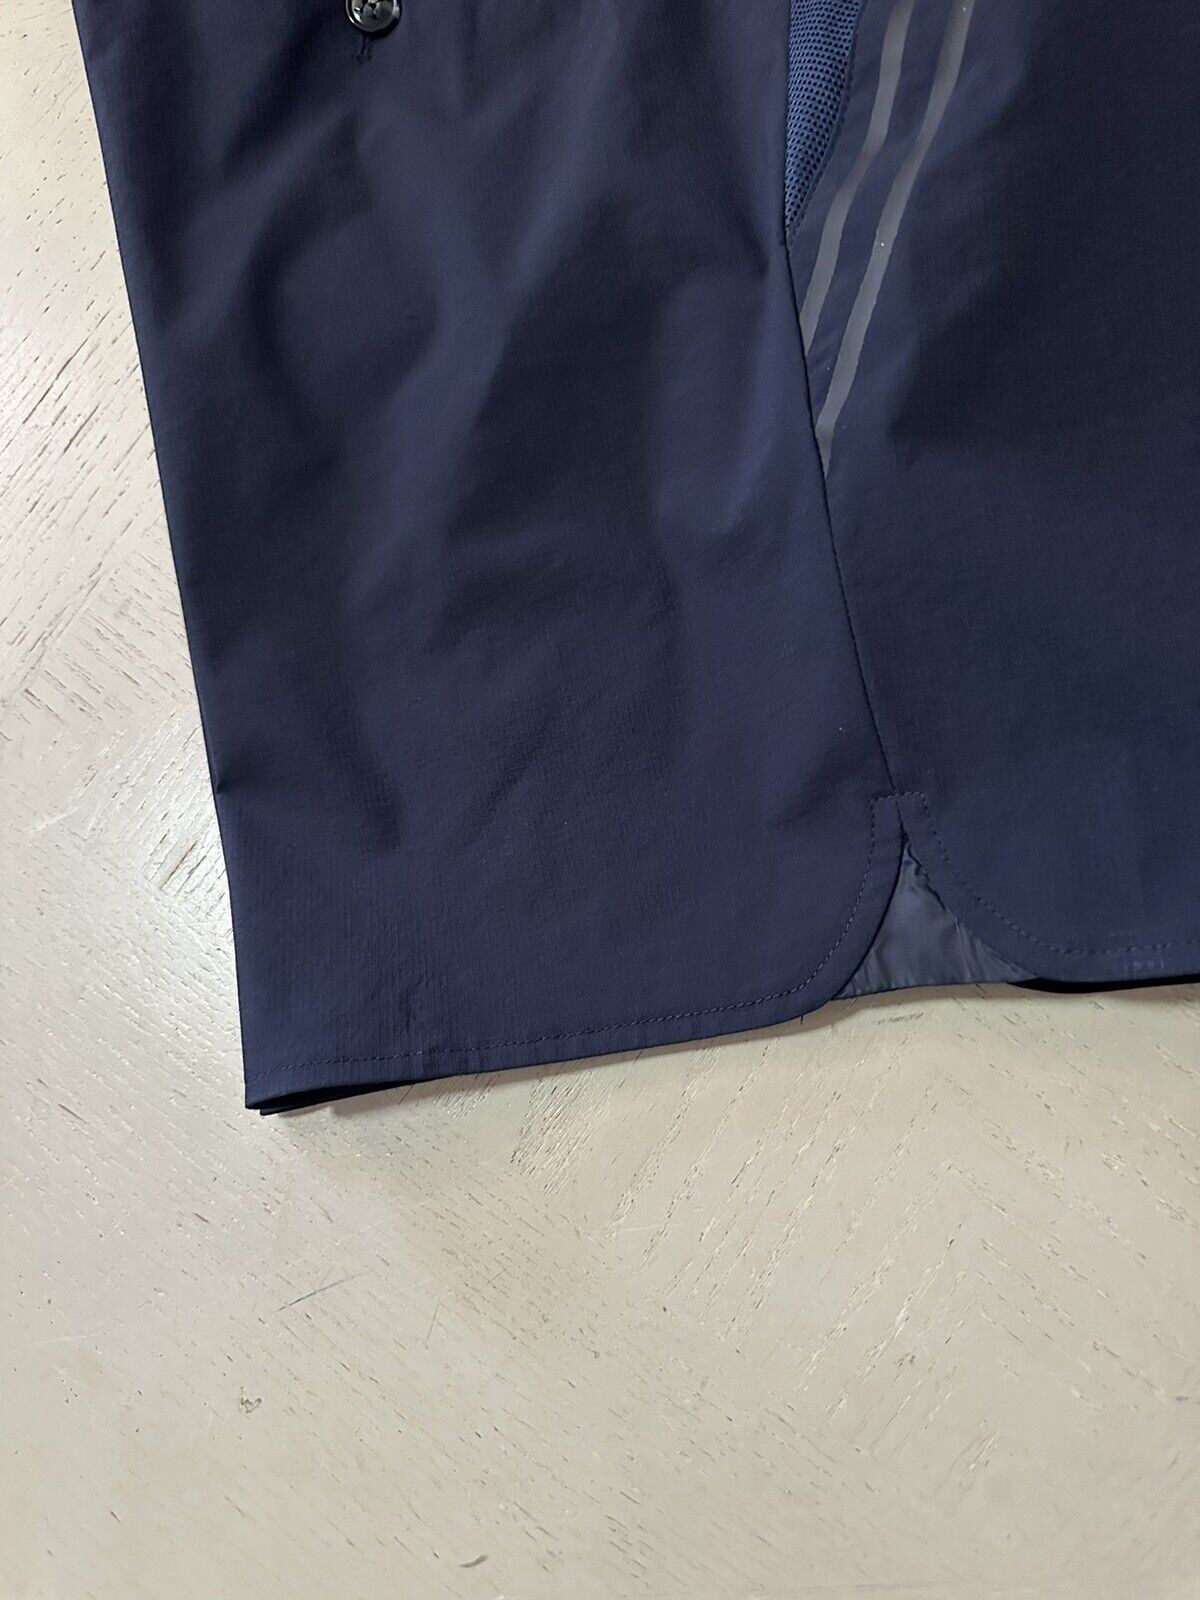 NWT $1395 Мужские нейлоновые короткие шорты Kiton темно-синего цвета, размер 40 США/56 ЕС, Италия